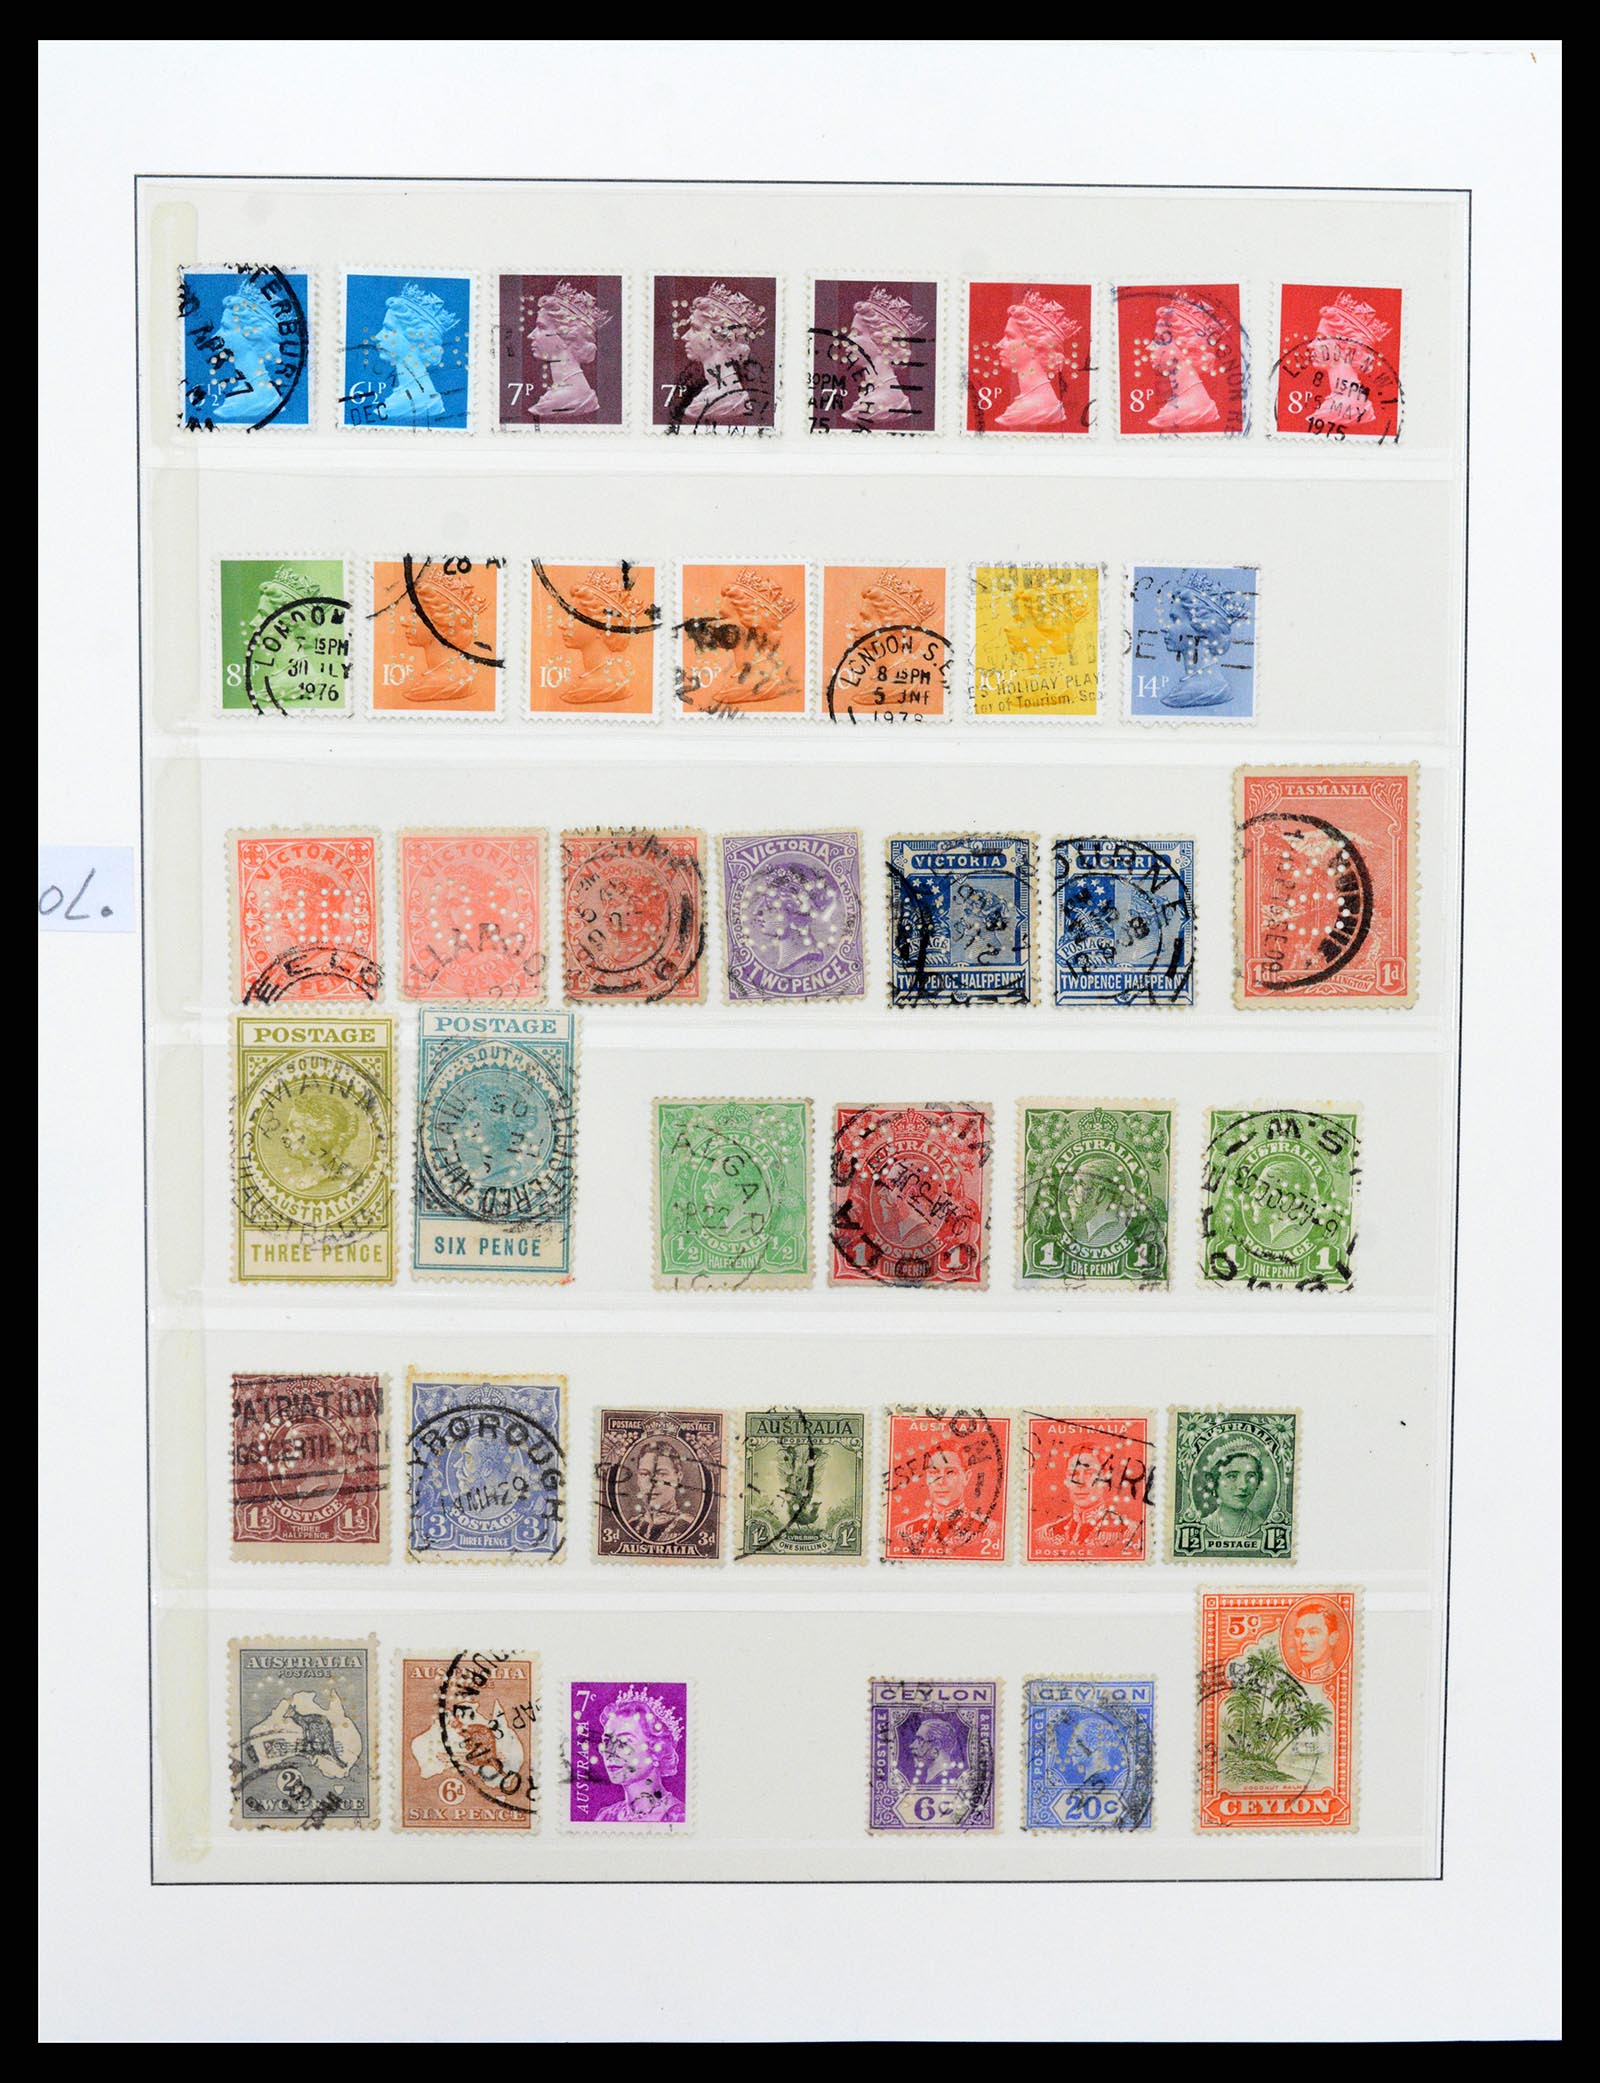 37317 039 - Postzegelverzameling 37317 Wereld perfins 1880-1960.